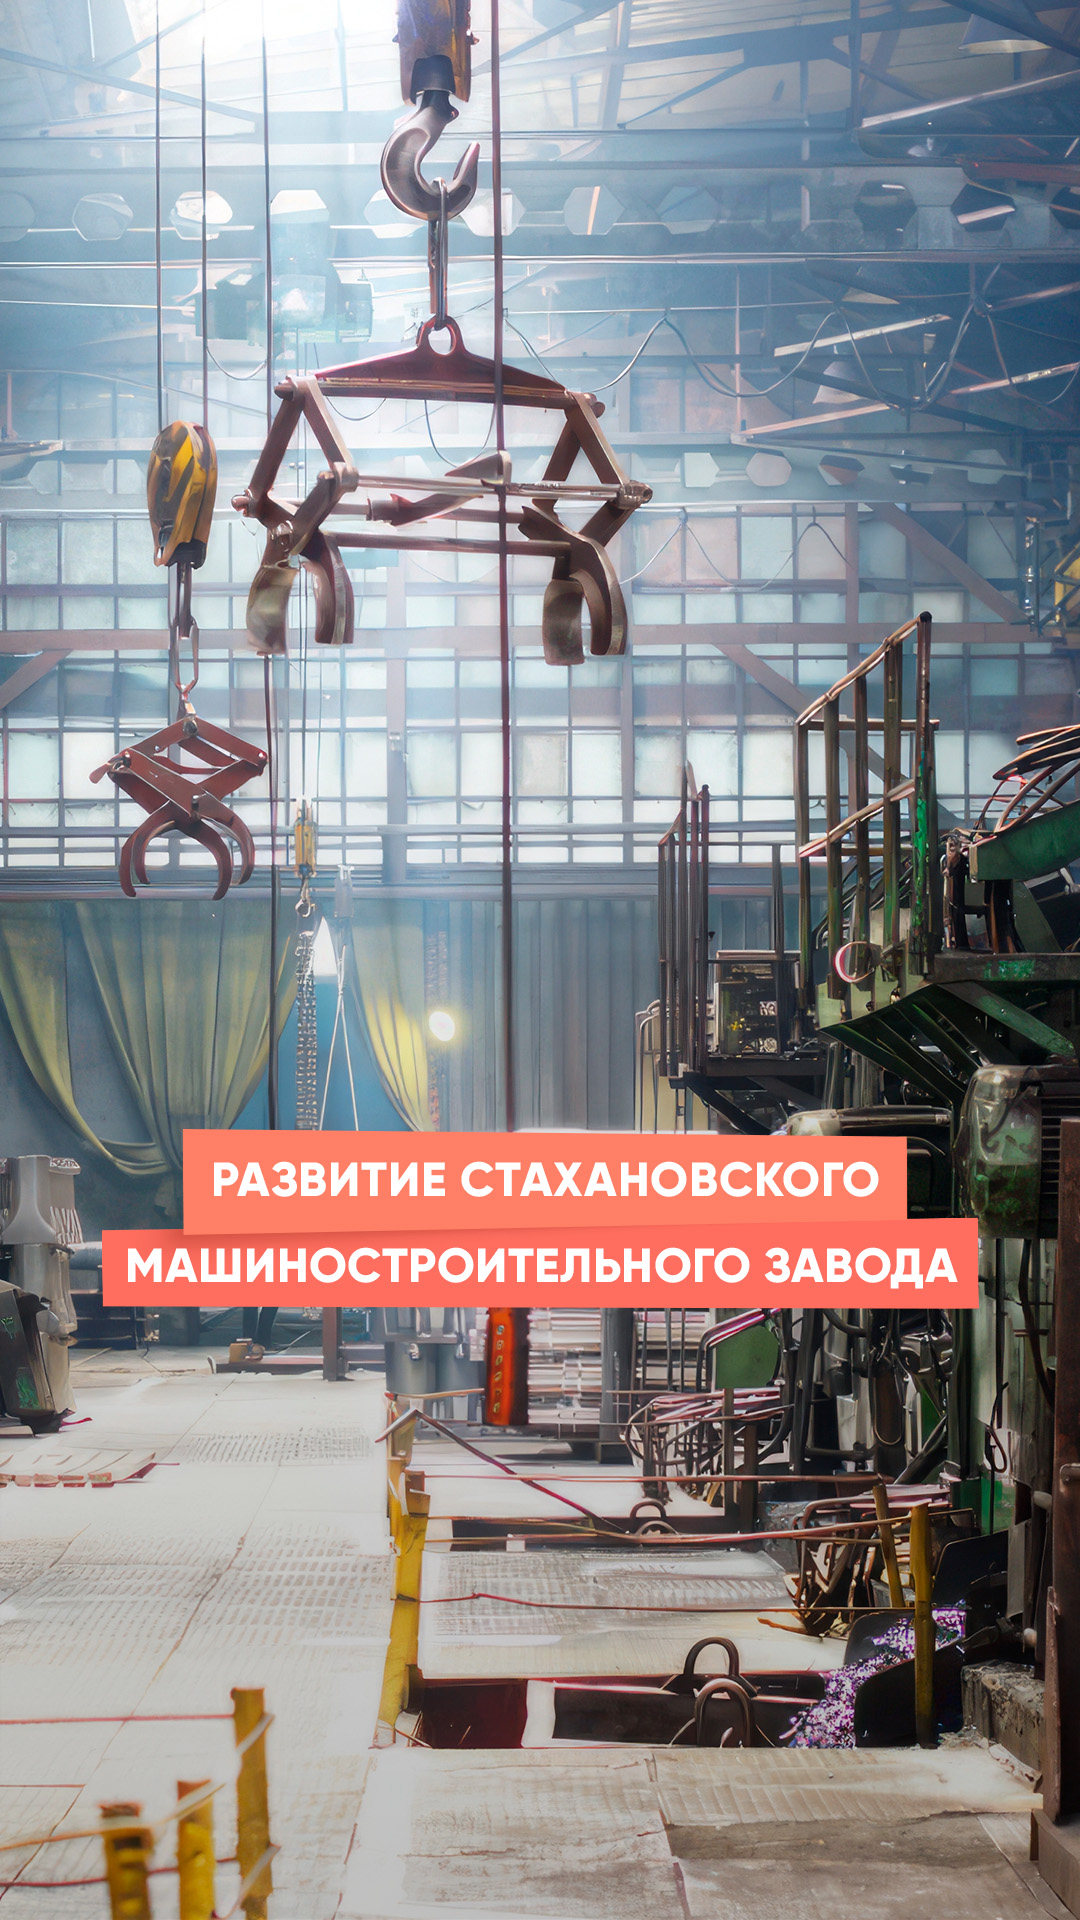 Развитие Стахановского машиностроительного завода